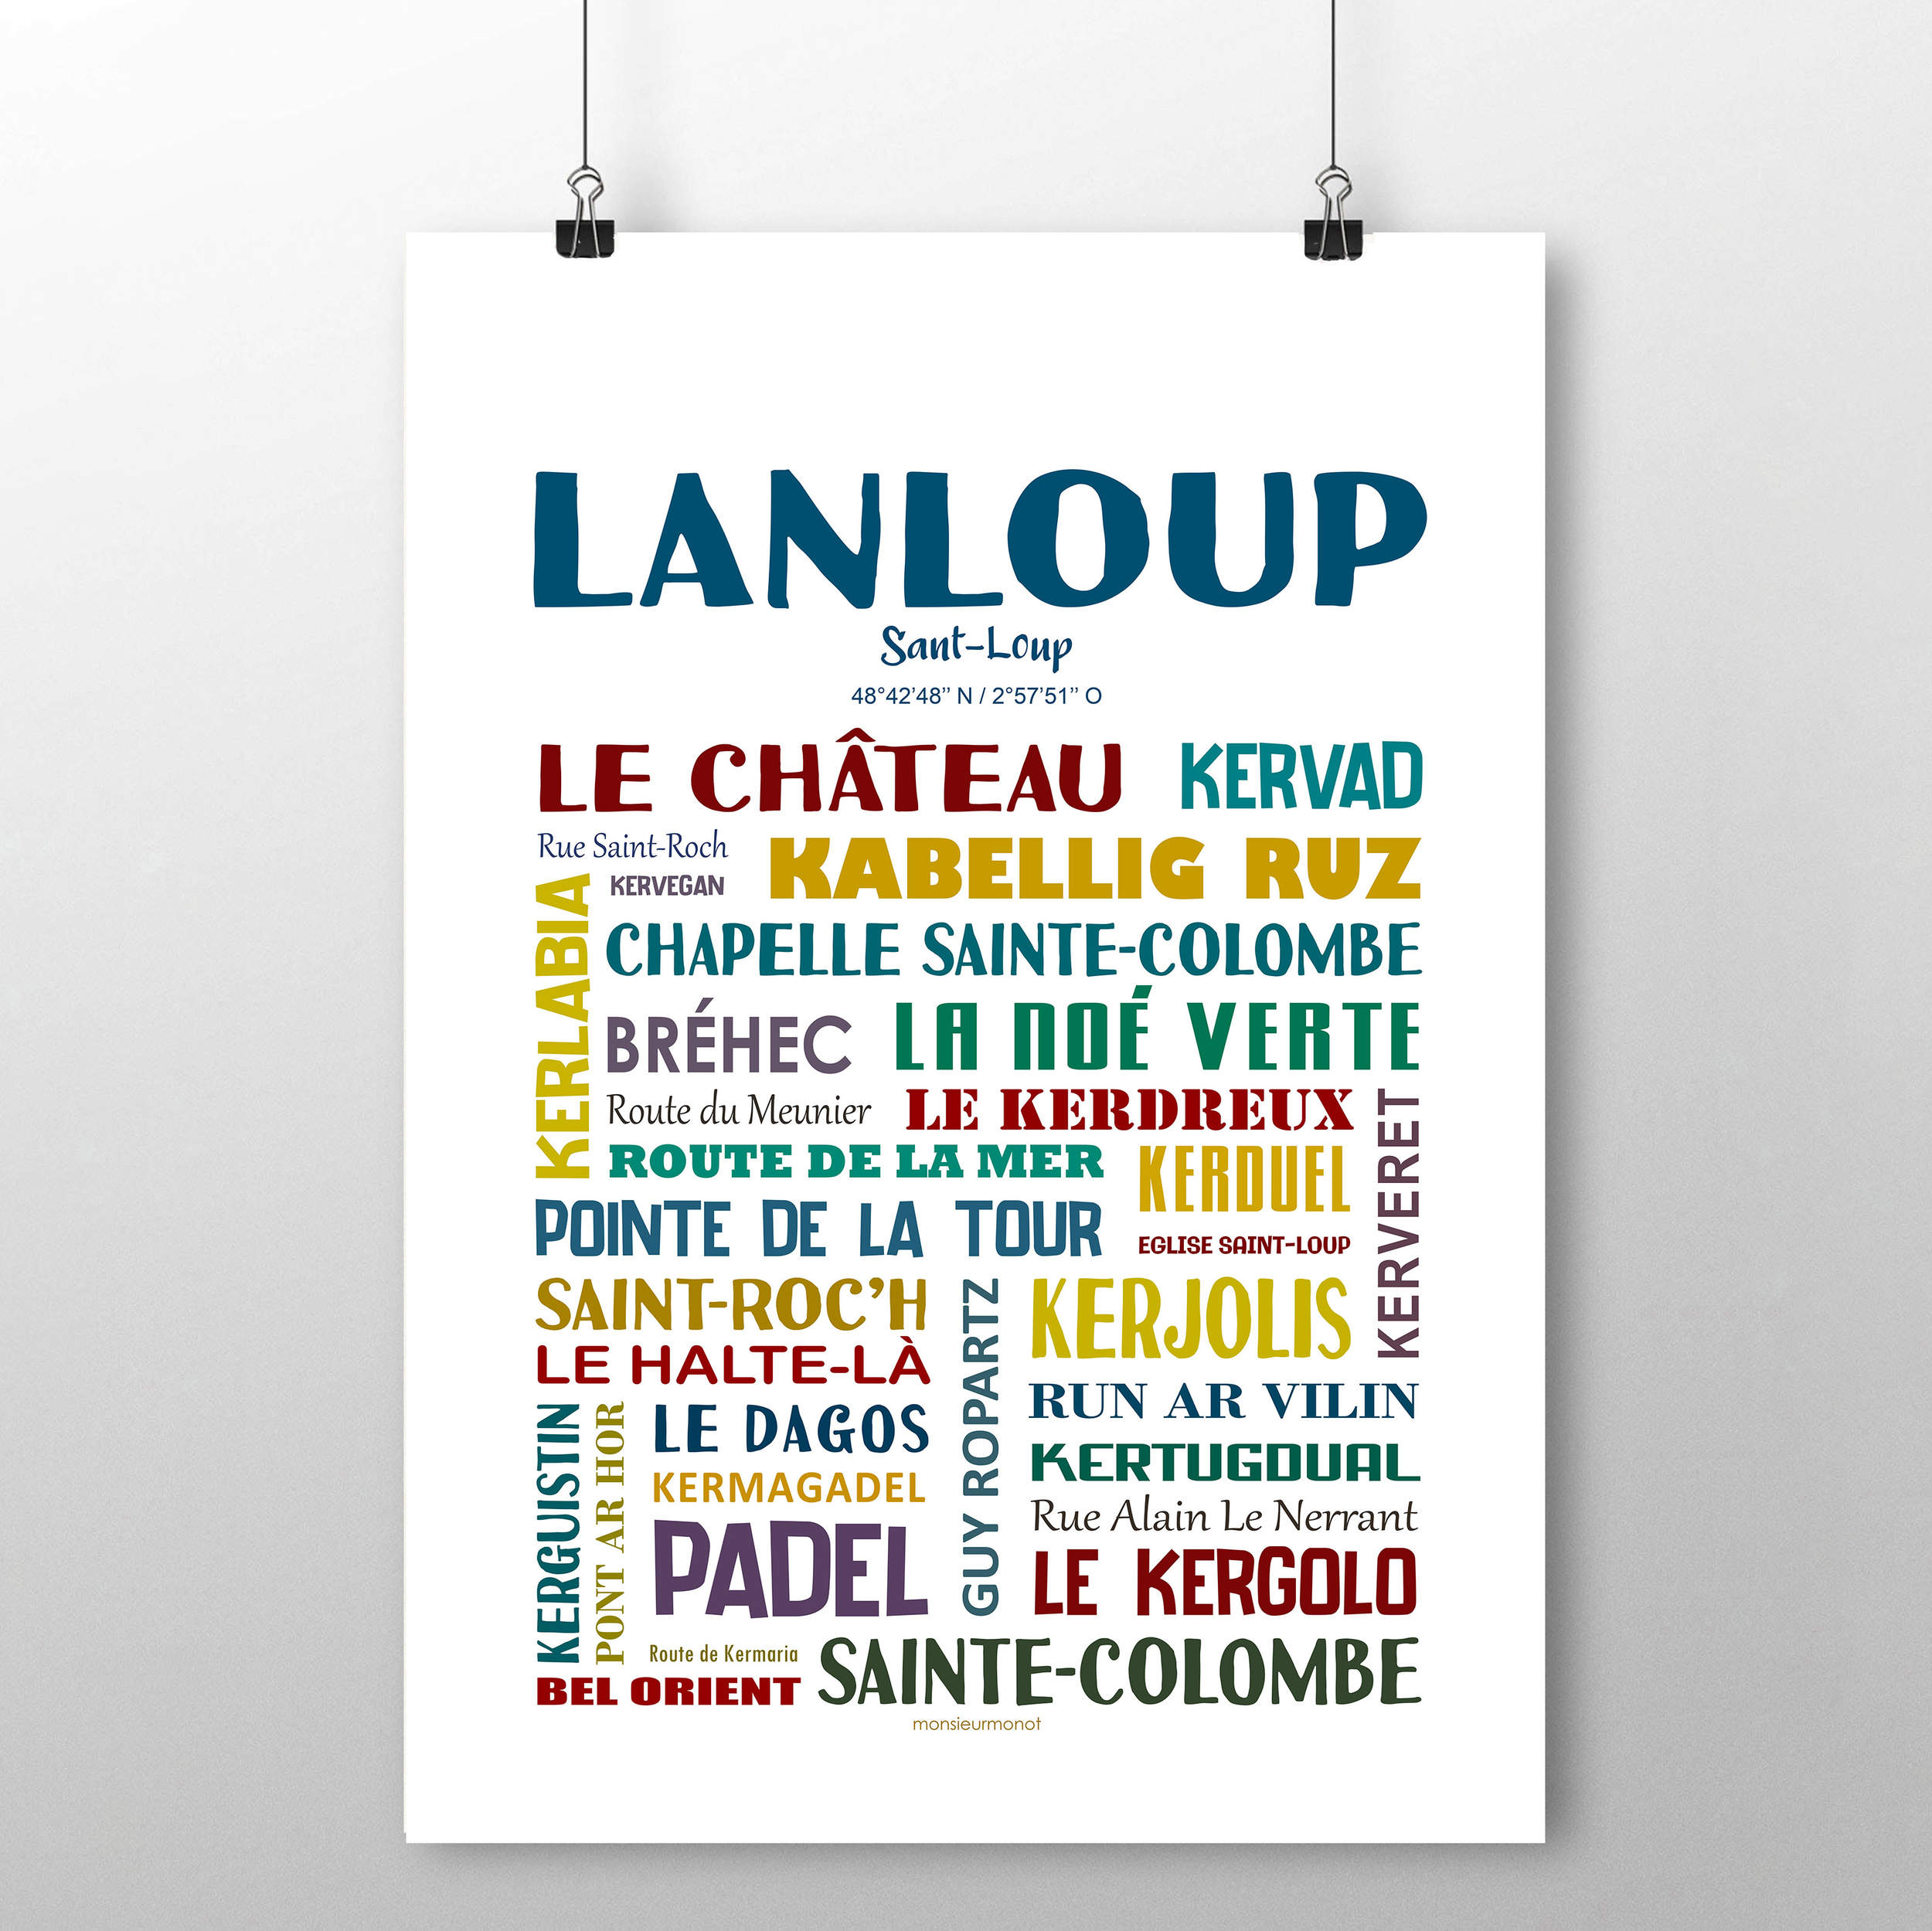 Lanloup